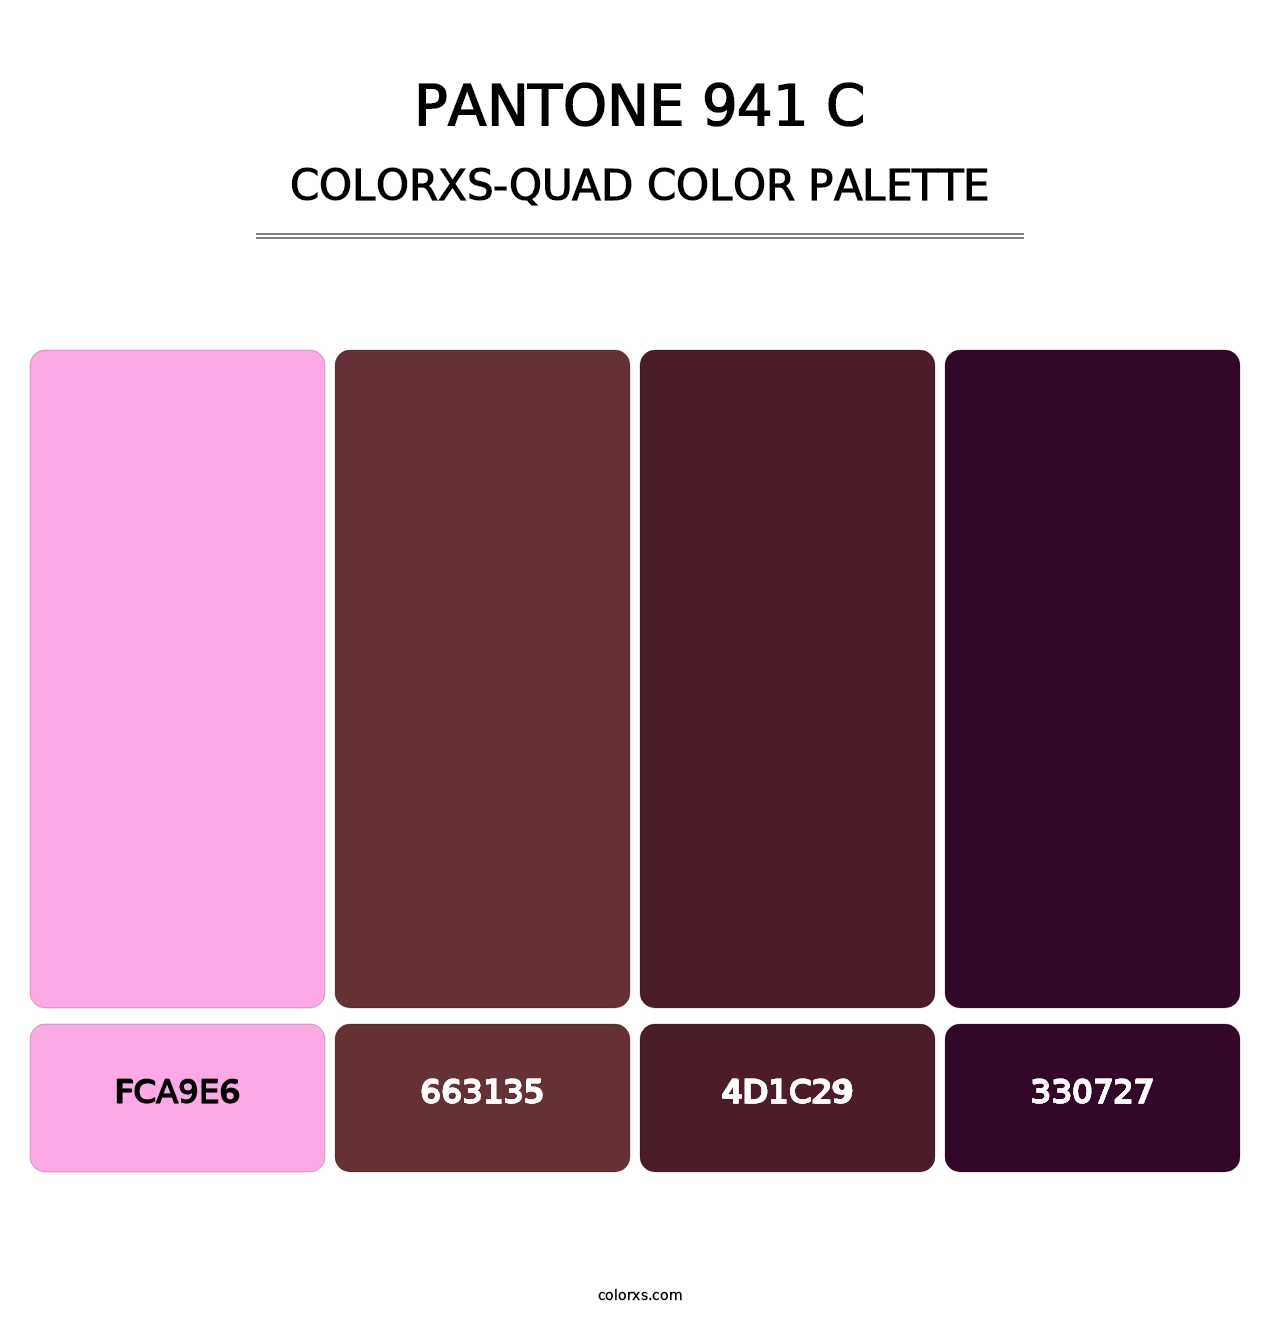 PANTONE 941 C - Colorxs Quad Palette